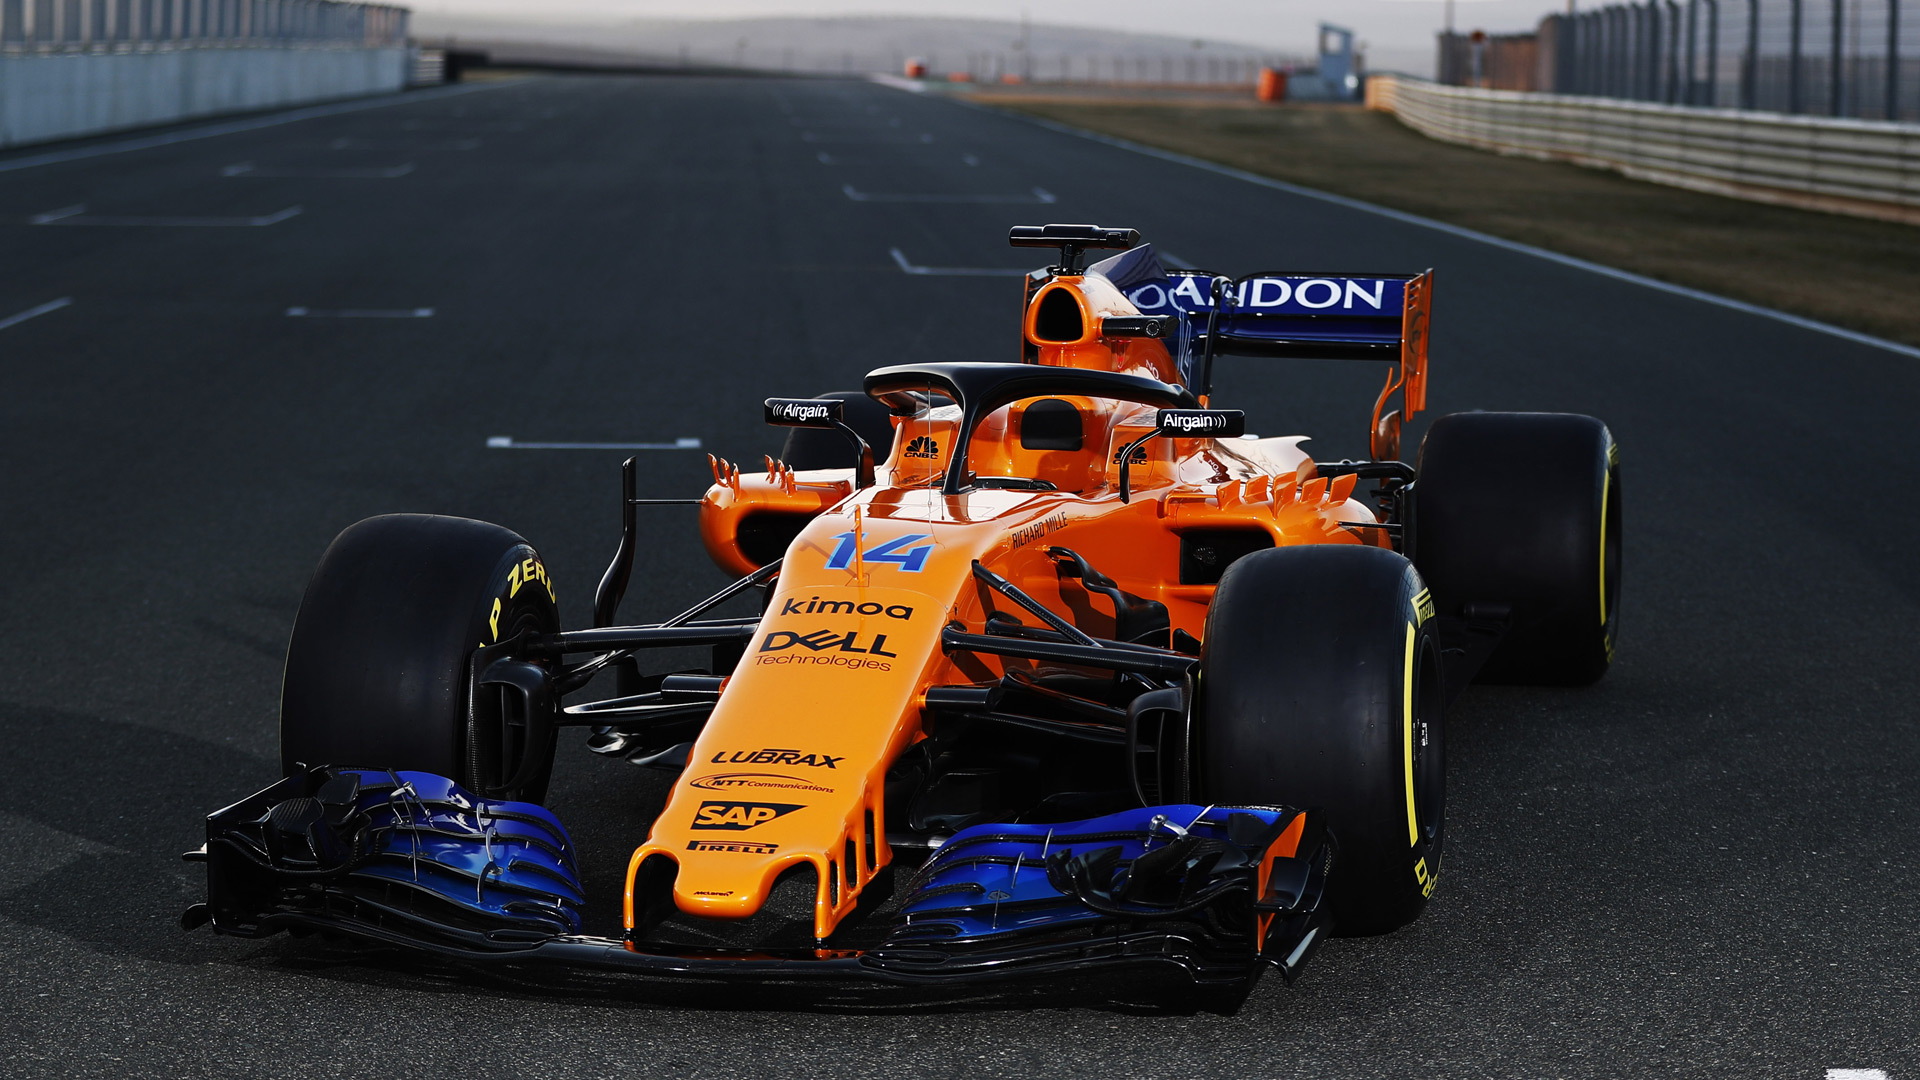 2018 McLaren MCL33 Formula 1 race car